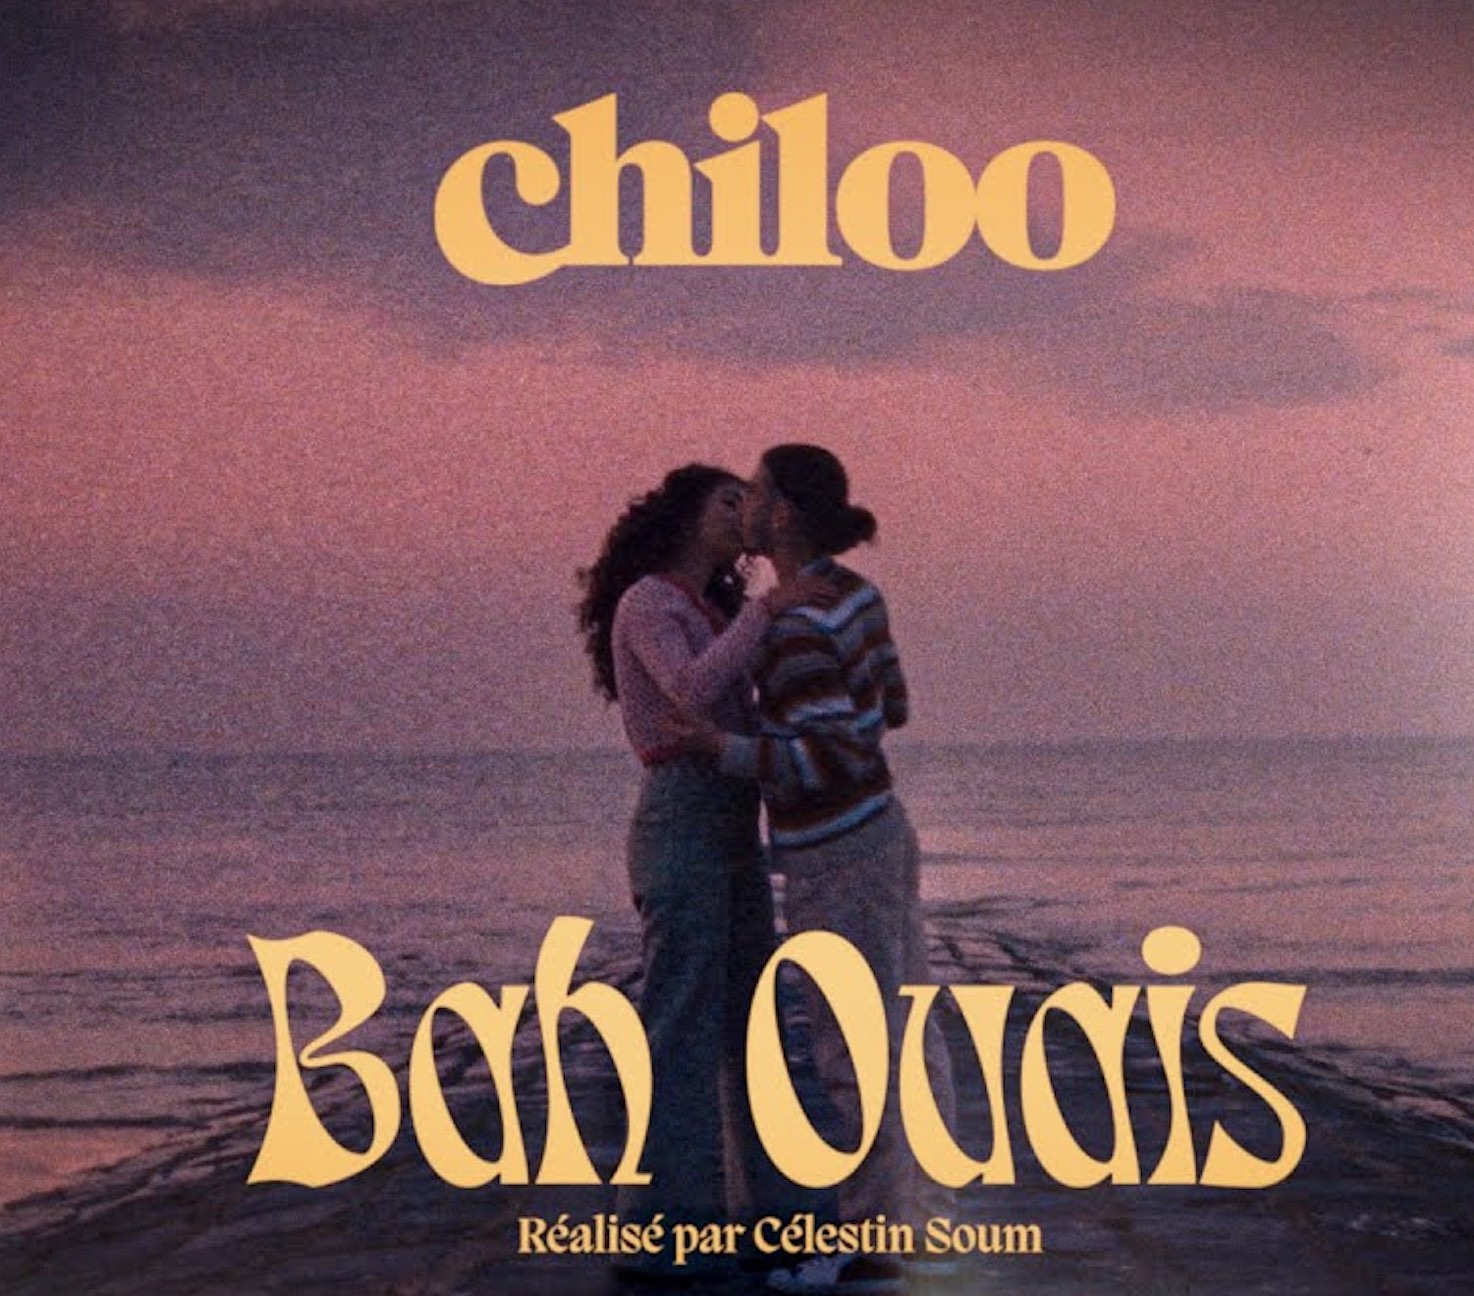 Chiloo - Bah ouais -